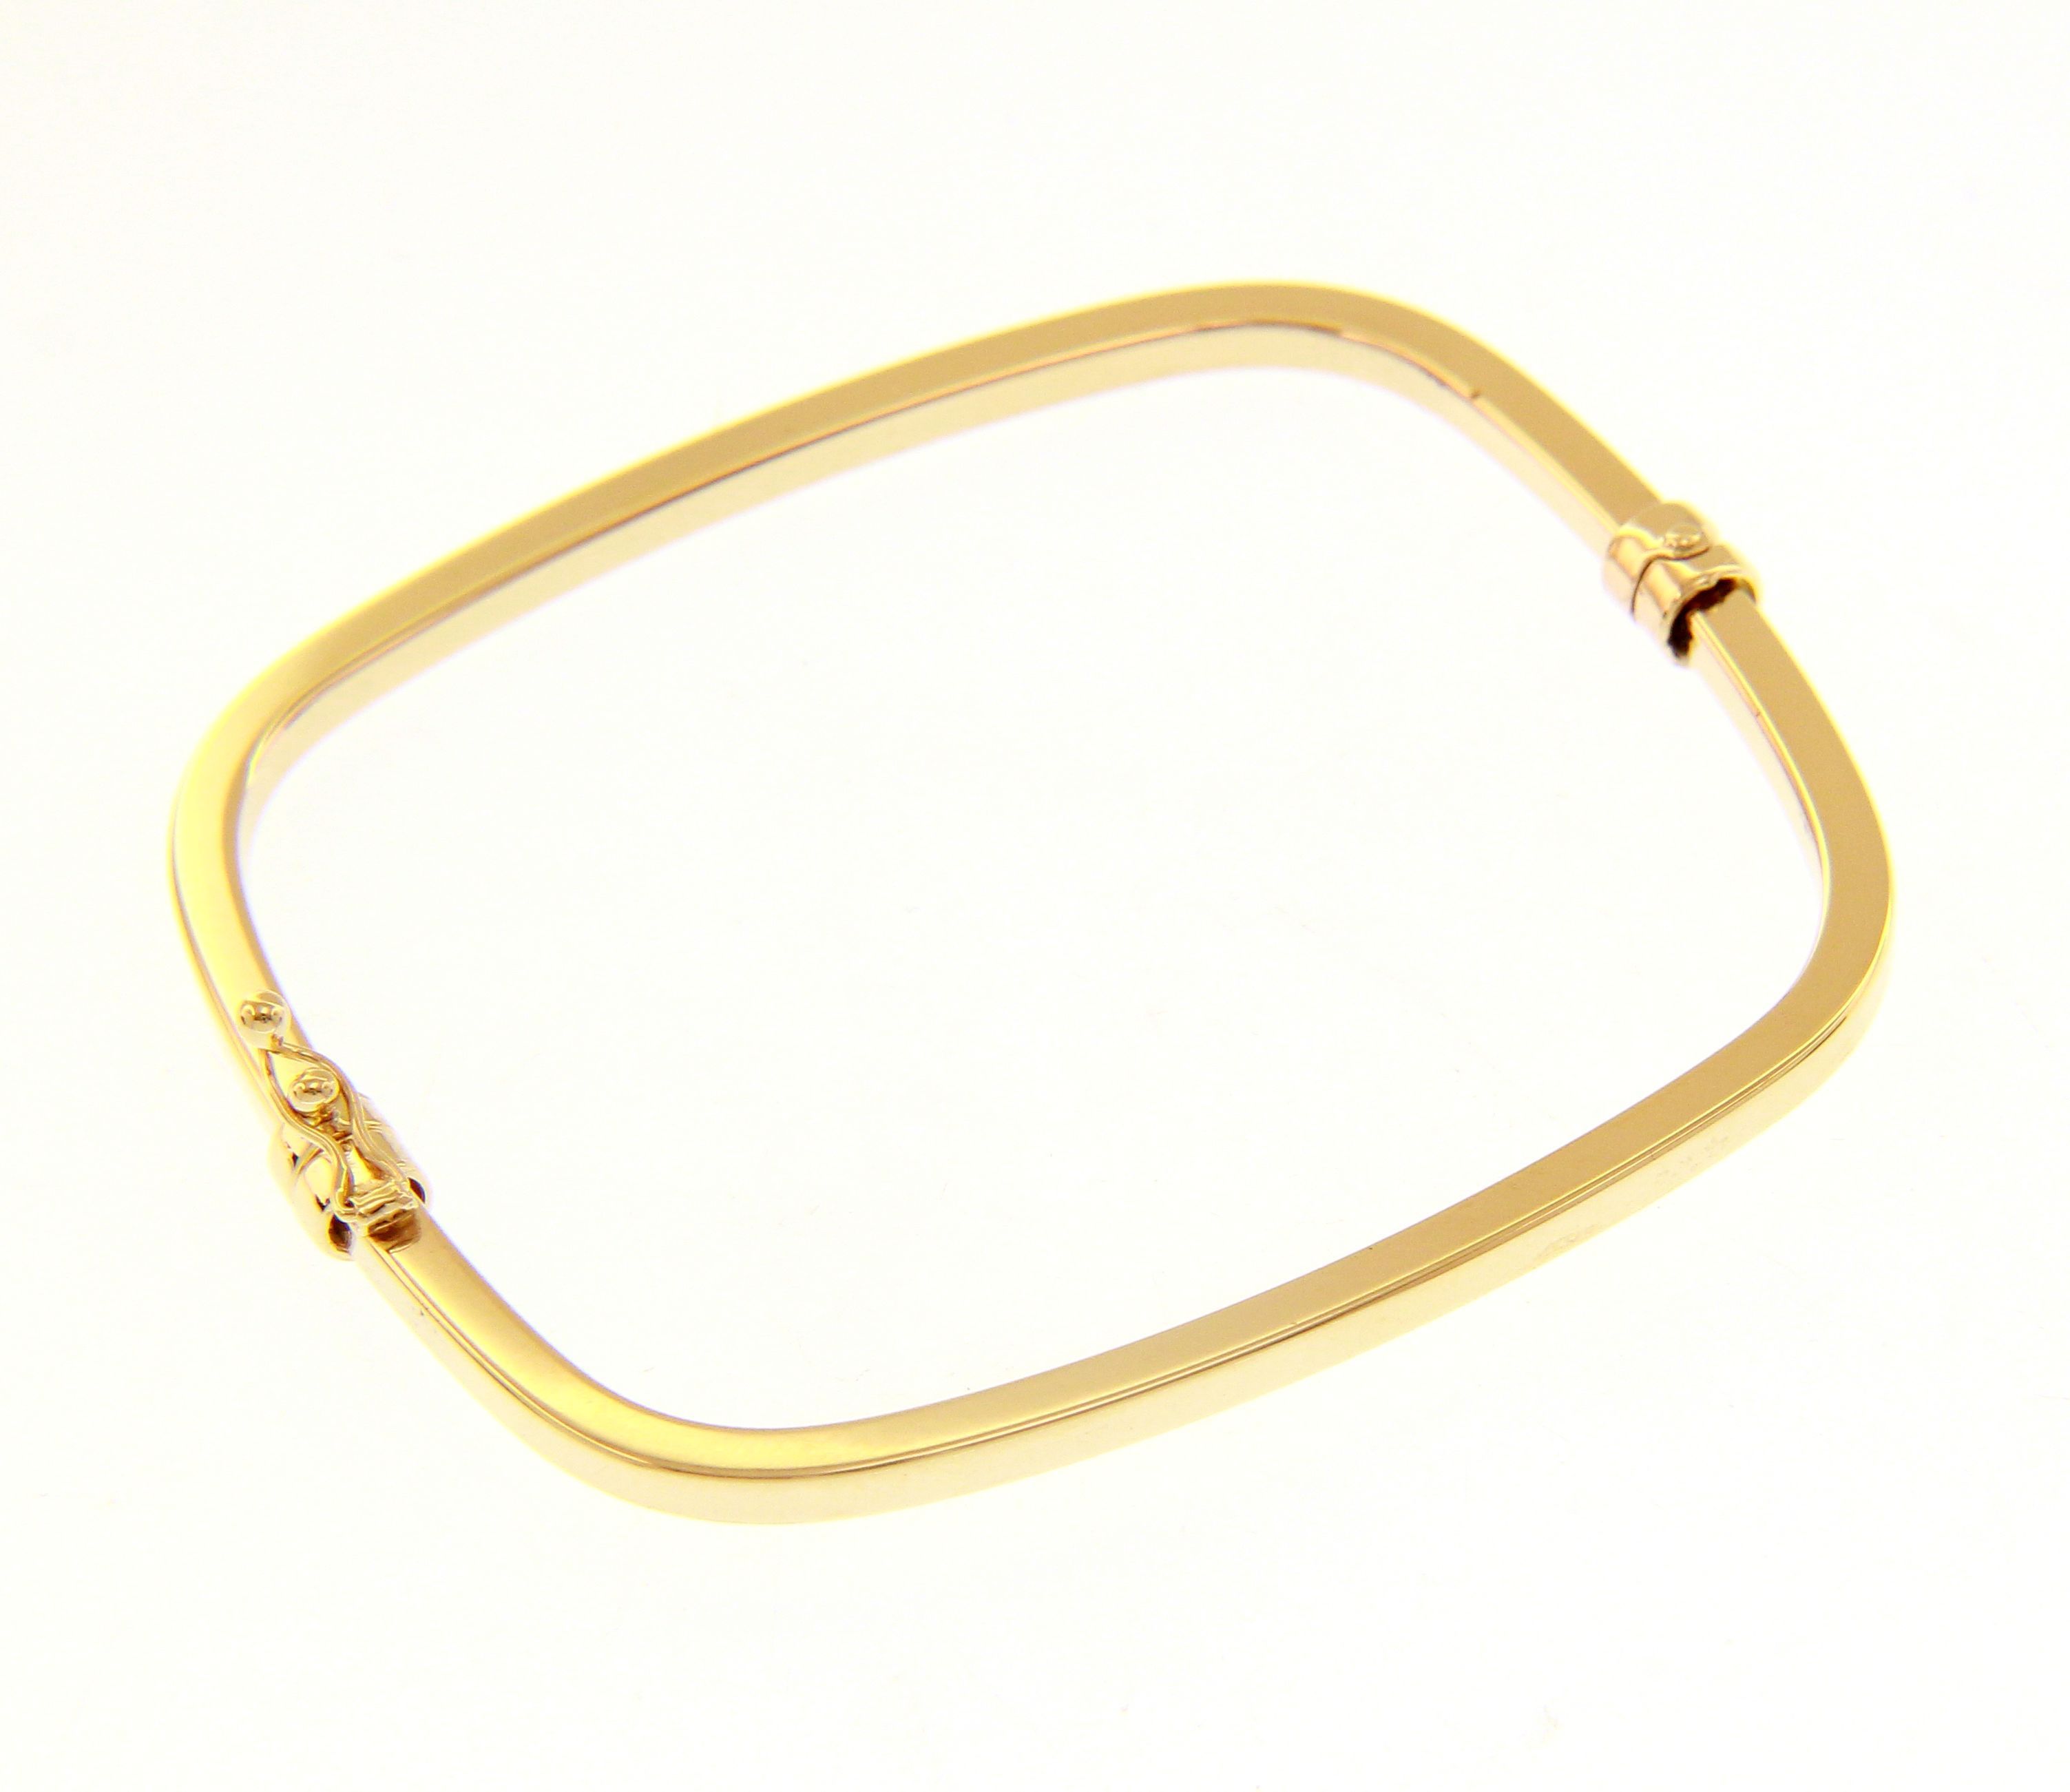 Golden parallelogram bracelet with clasp k14  (code S219993)